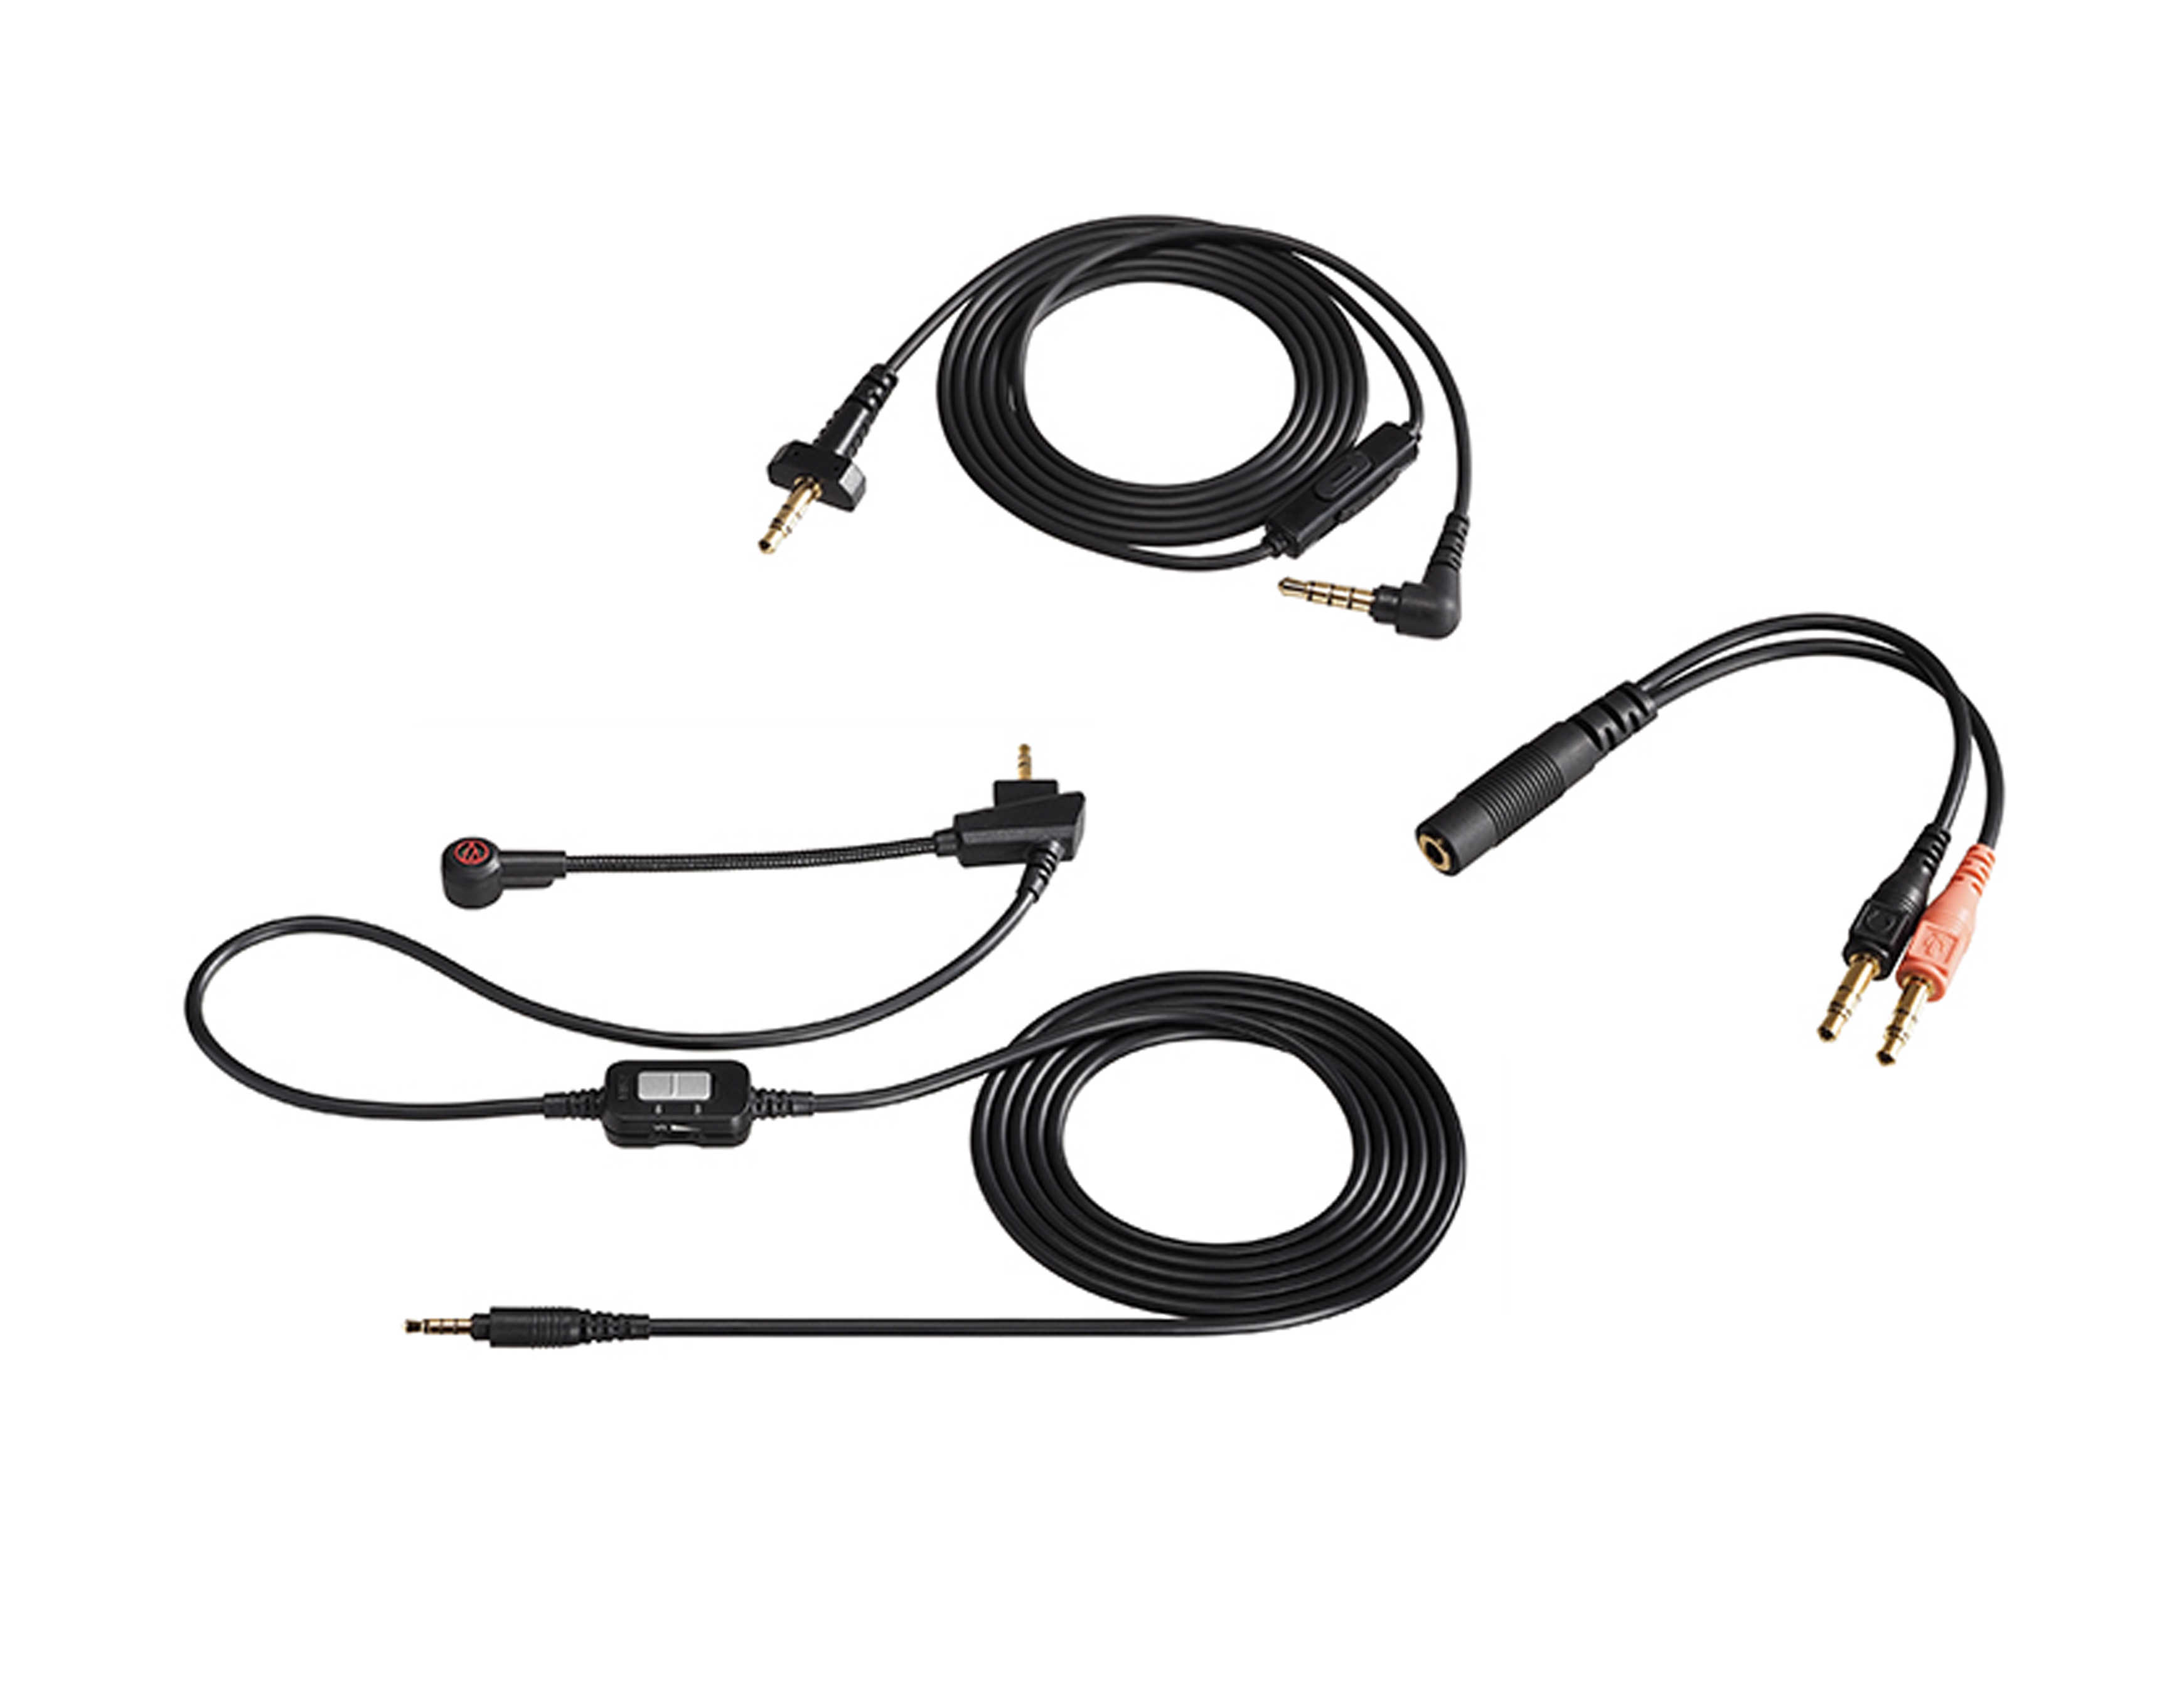 鐵三角 ATH-PDG1A 開放式 電競 耳罩式耳機 麥克風 三種可拆卸式導線 | 金曲音響